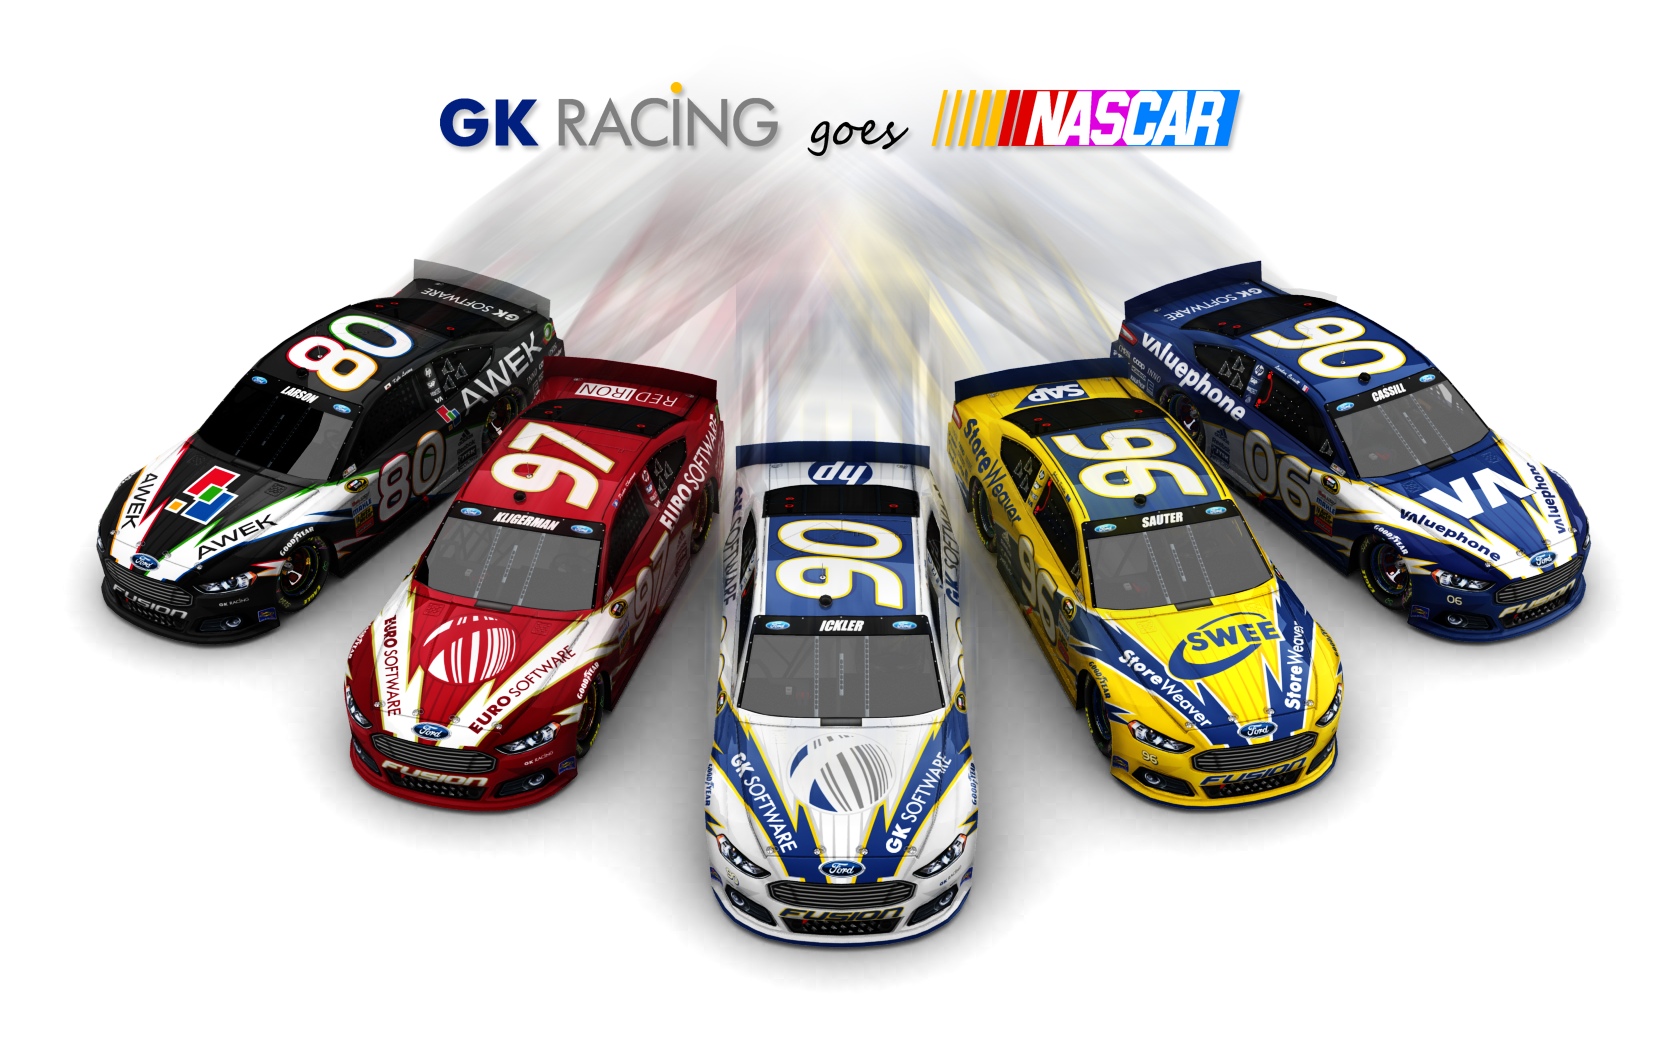 2013 GK Racing, Alle fünf Fahrzeuge (ausschwärmend, weißer Hintergrund)